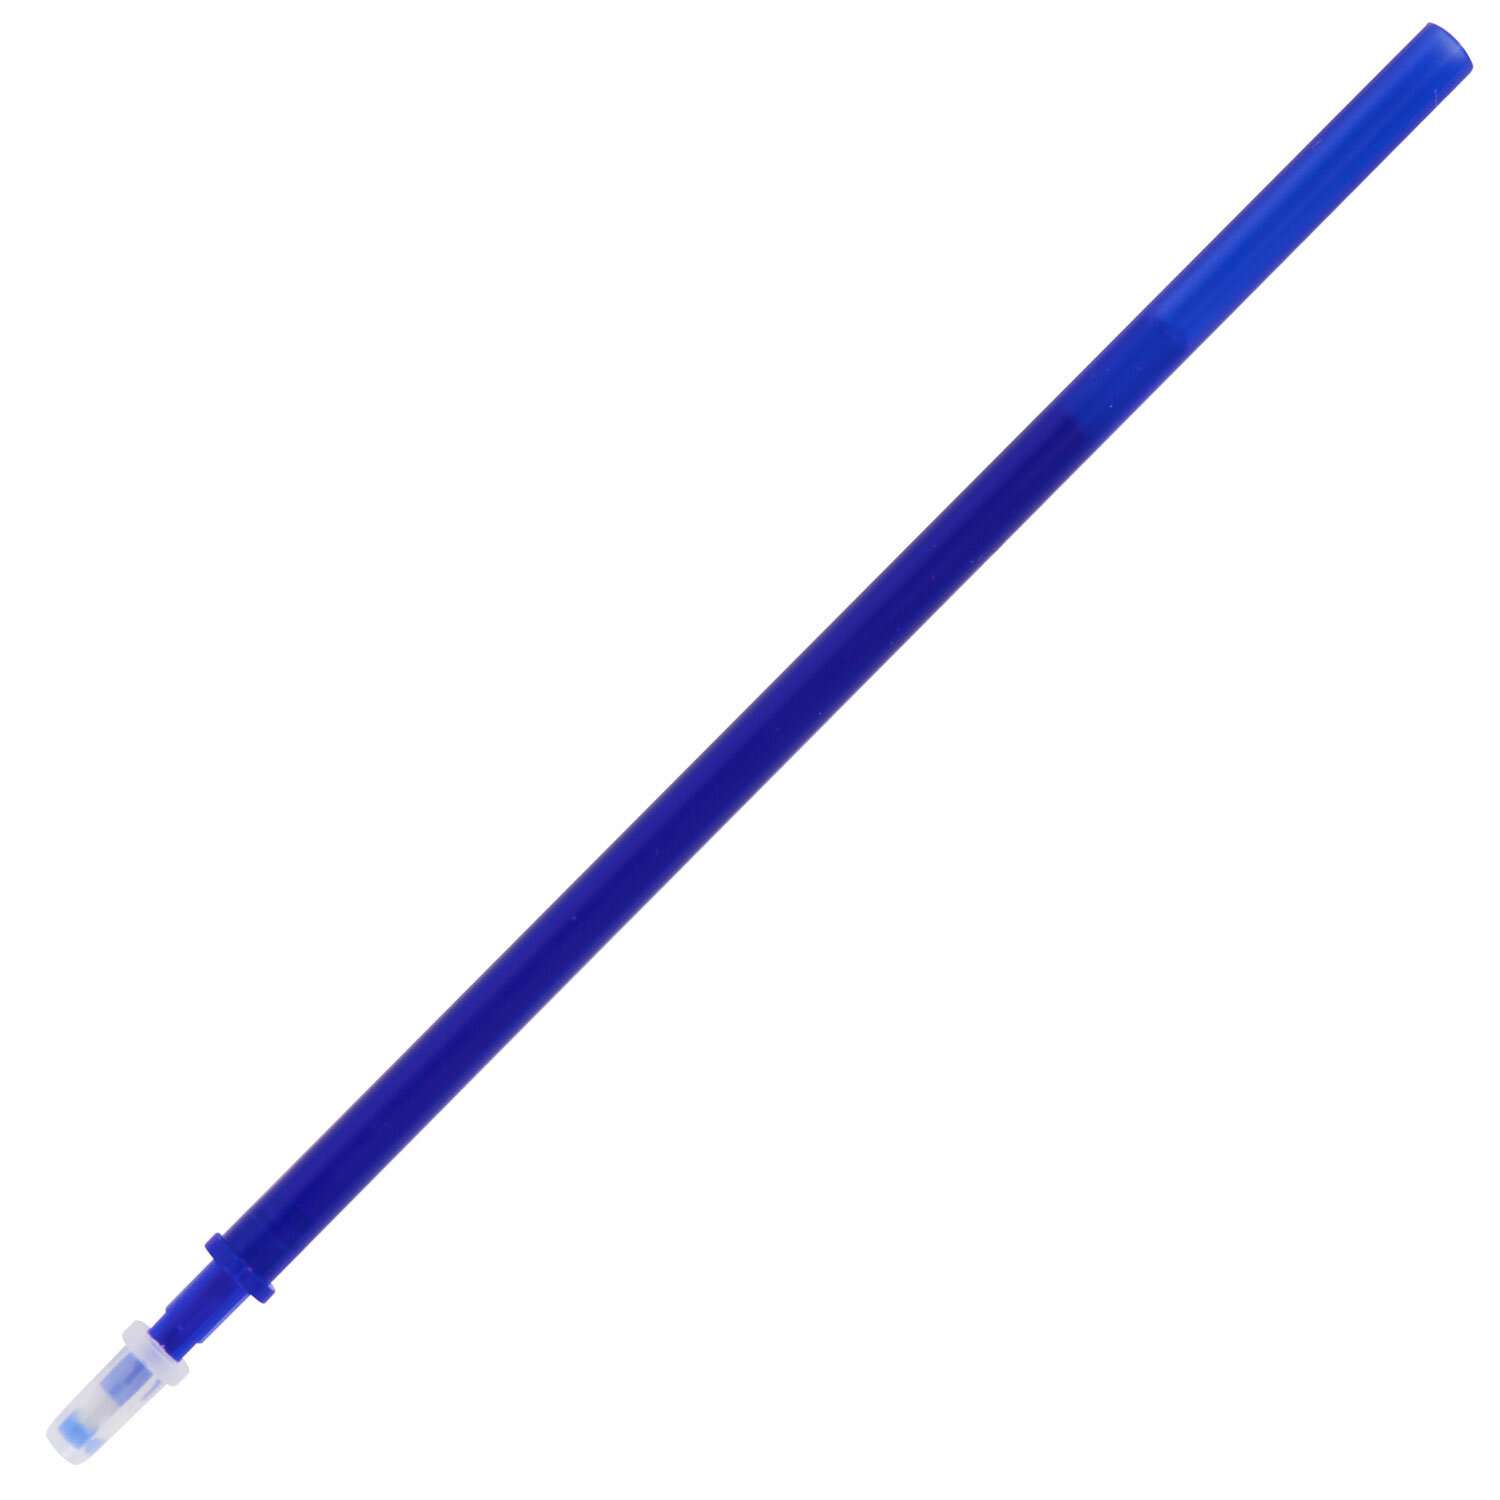 Ручка гелевая Brauberg пиши стирай синяя набор со стержнями 5 штук стираемые - фото 13